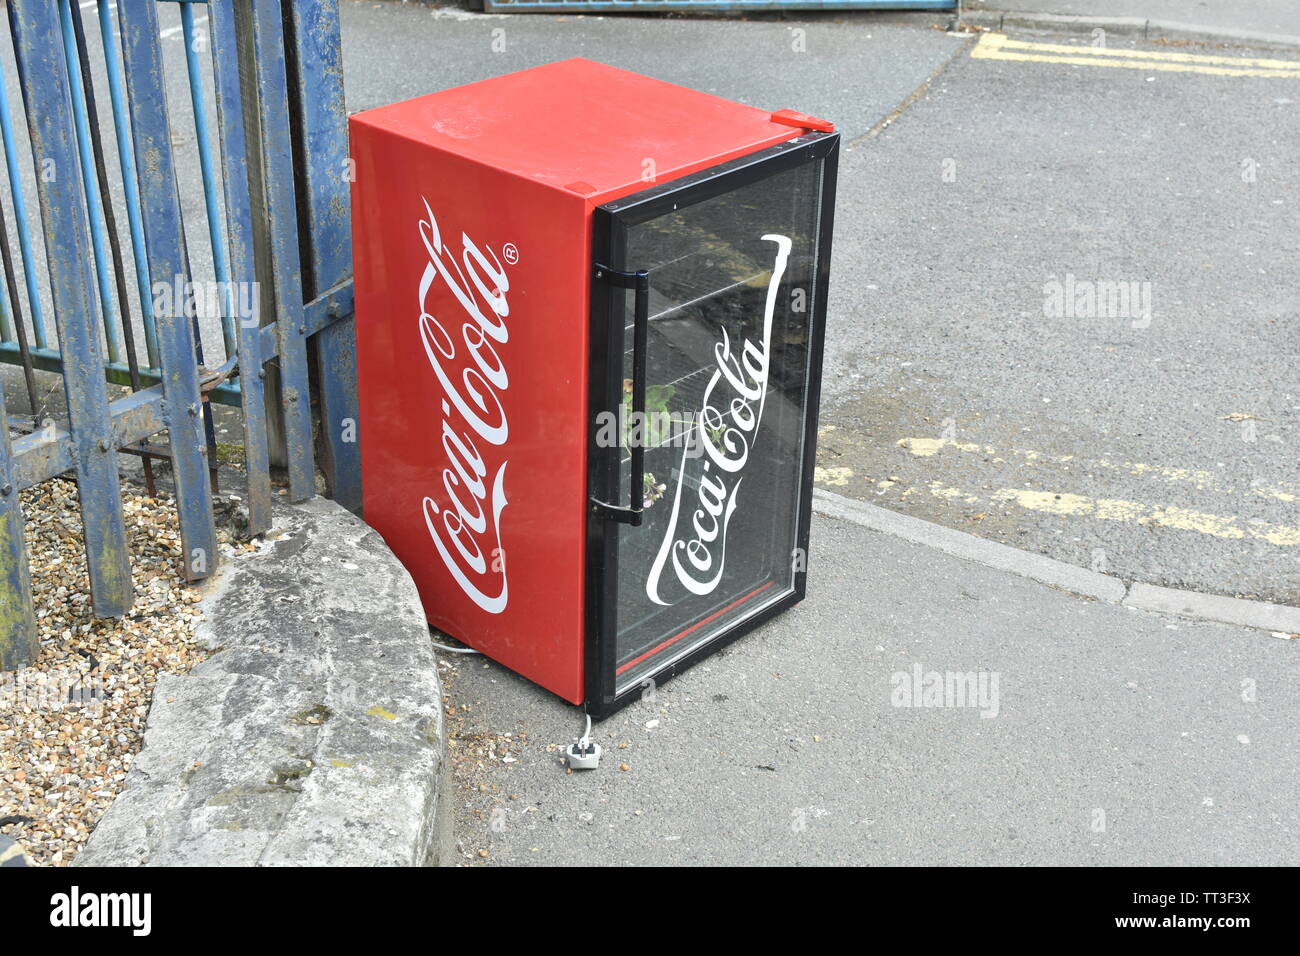 Ashford, ein Coca Cola mini Kühlschrank fliegen - Trinkgeld an der